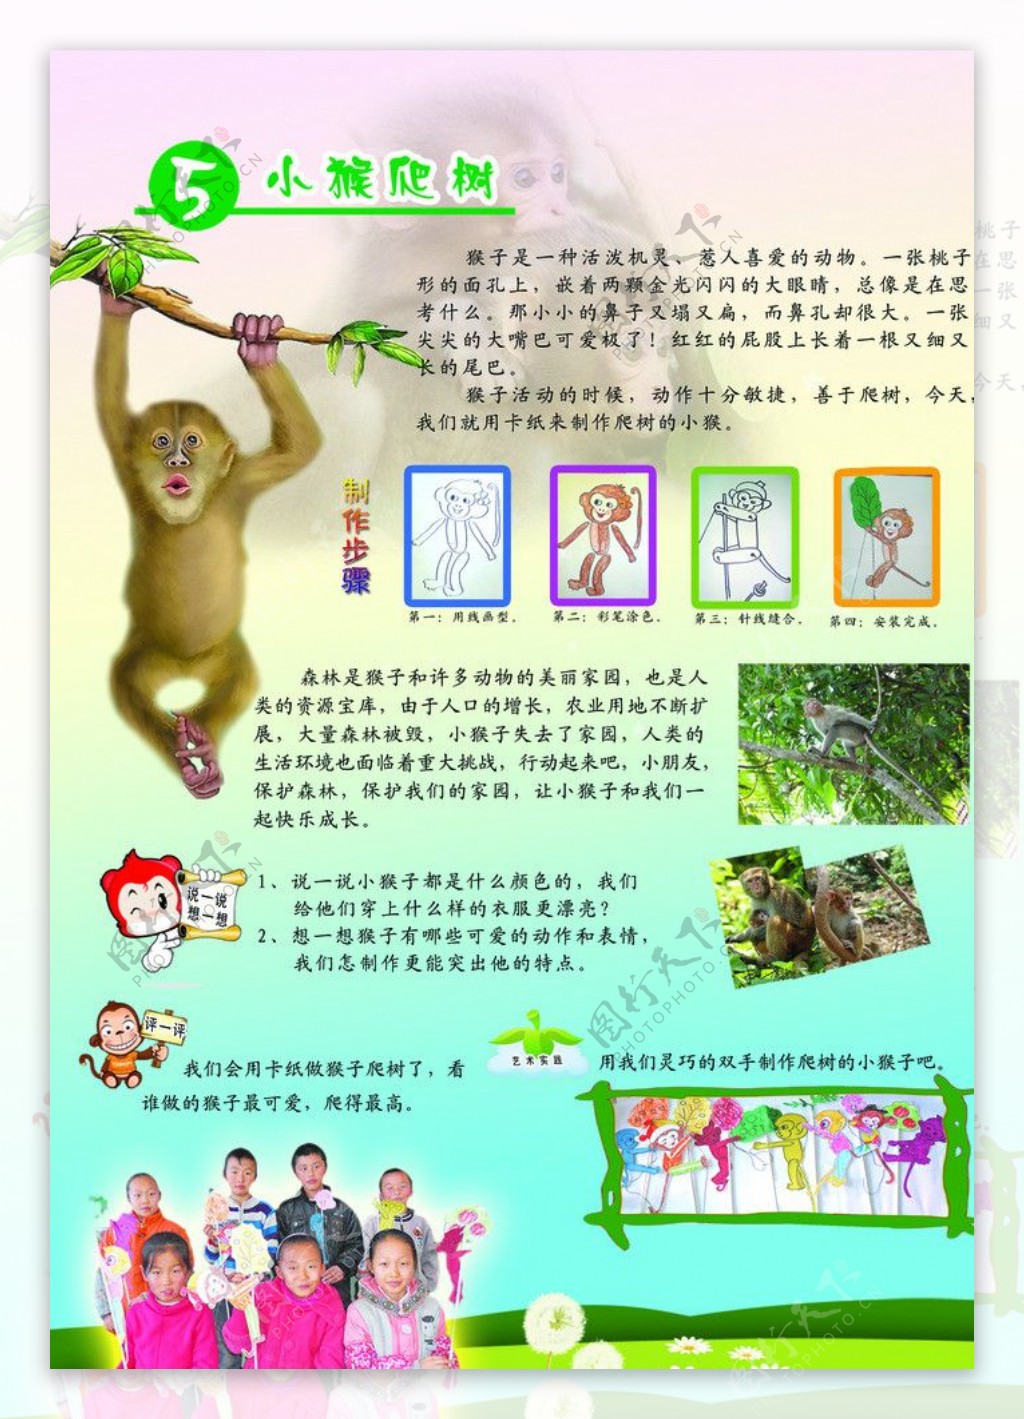 猴子爬树图片